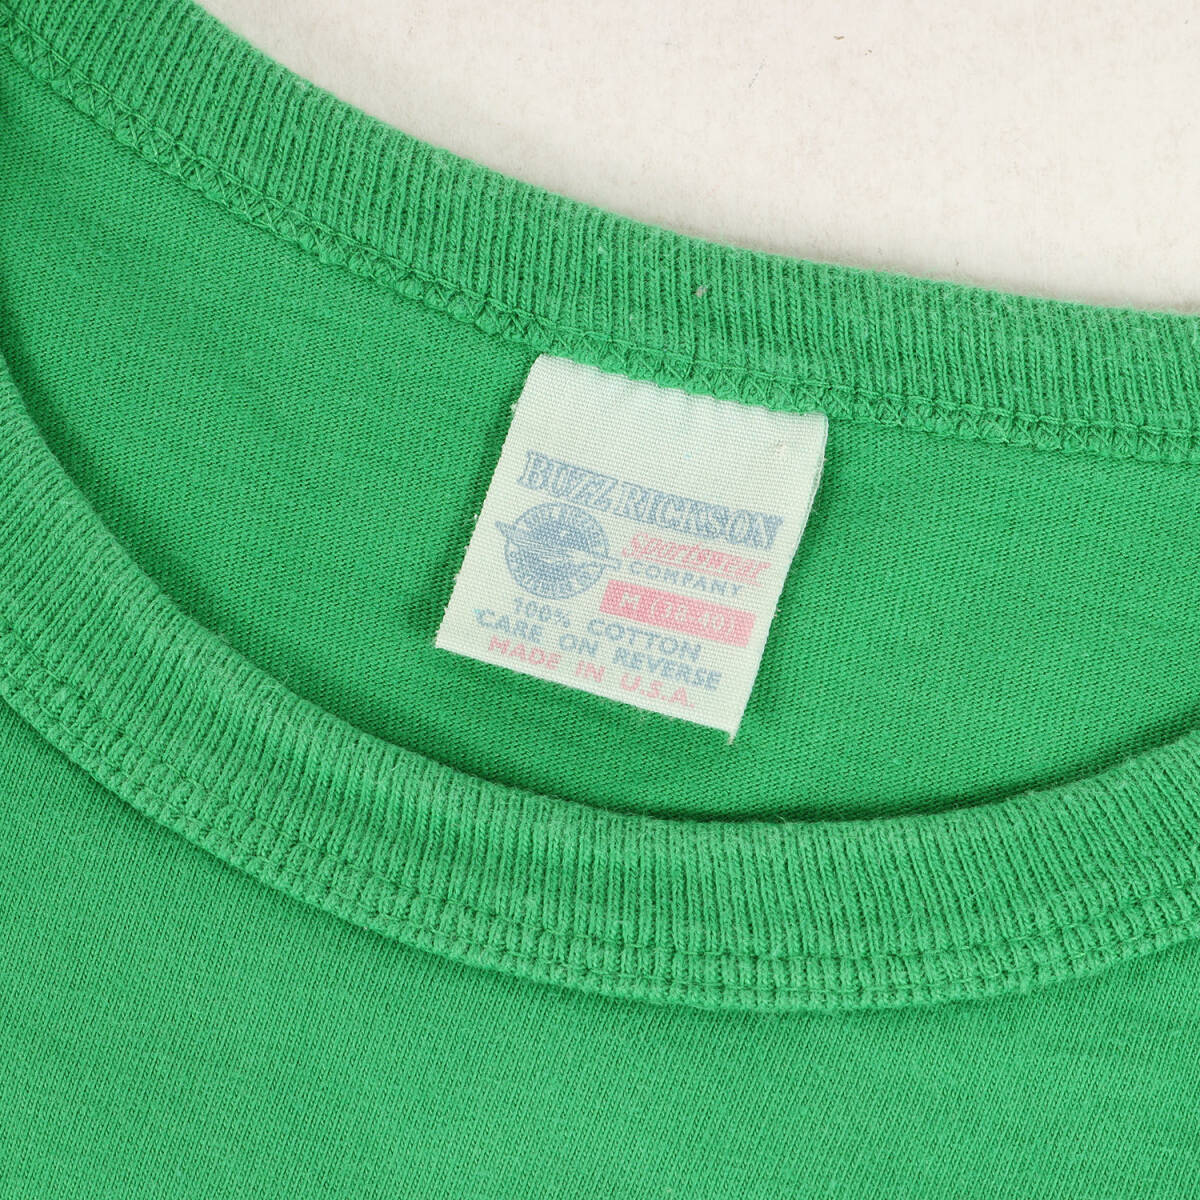 BuzzRicksons バズリクソンズ Tシャツ サイズ:M PEANUTS スヌーピー ミリタリー プリント クルーネック 半袖Tシャツ USA製 グリーン_画像3